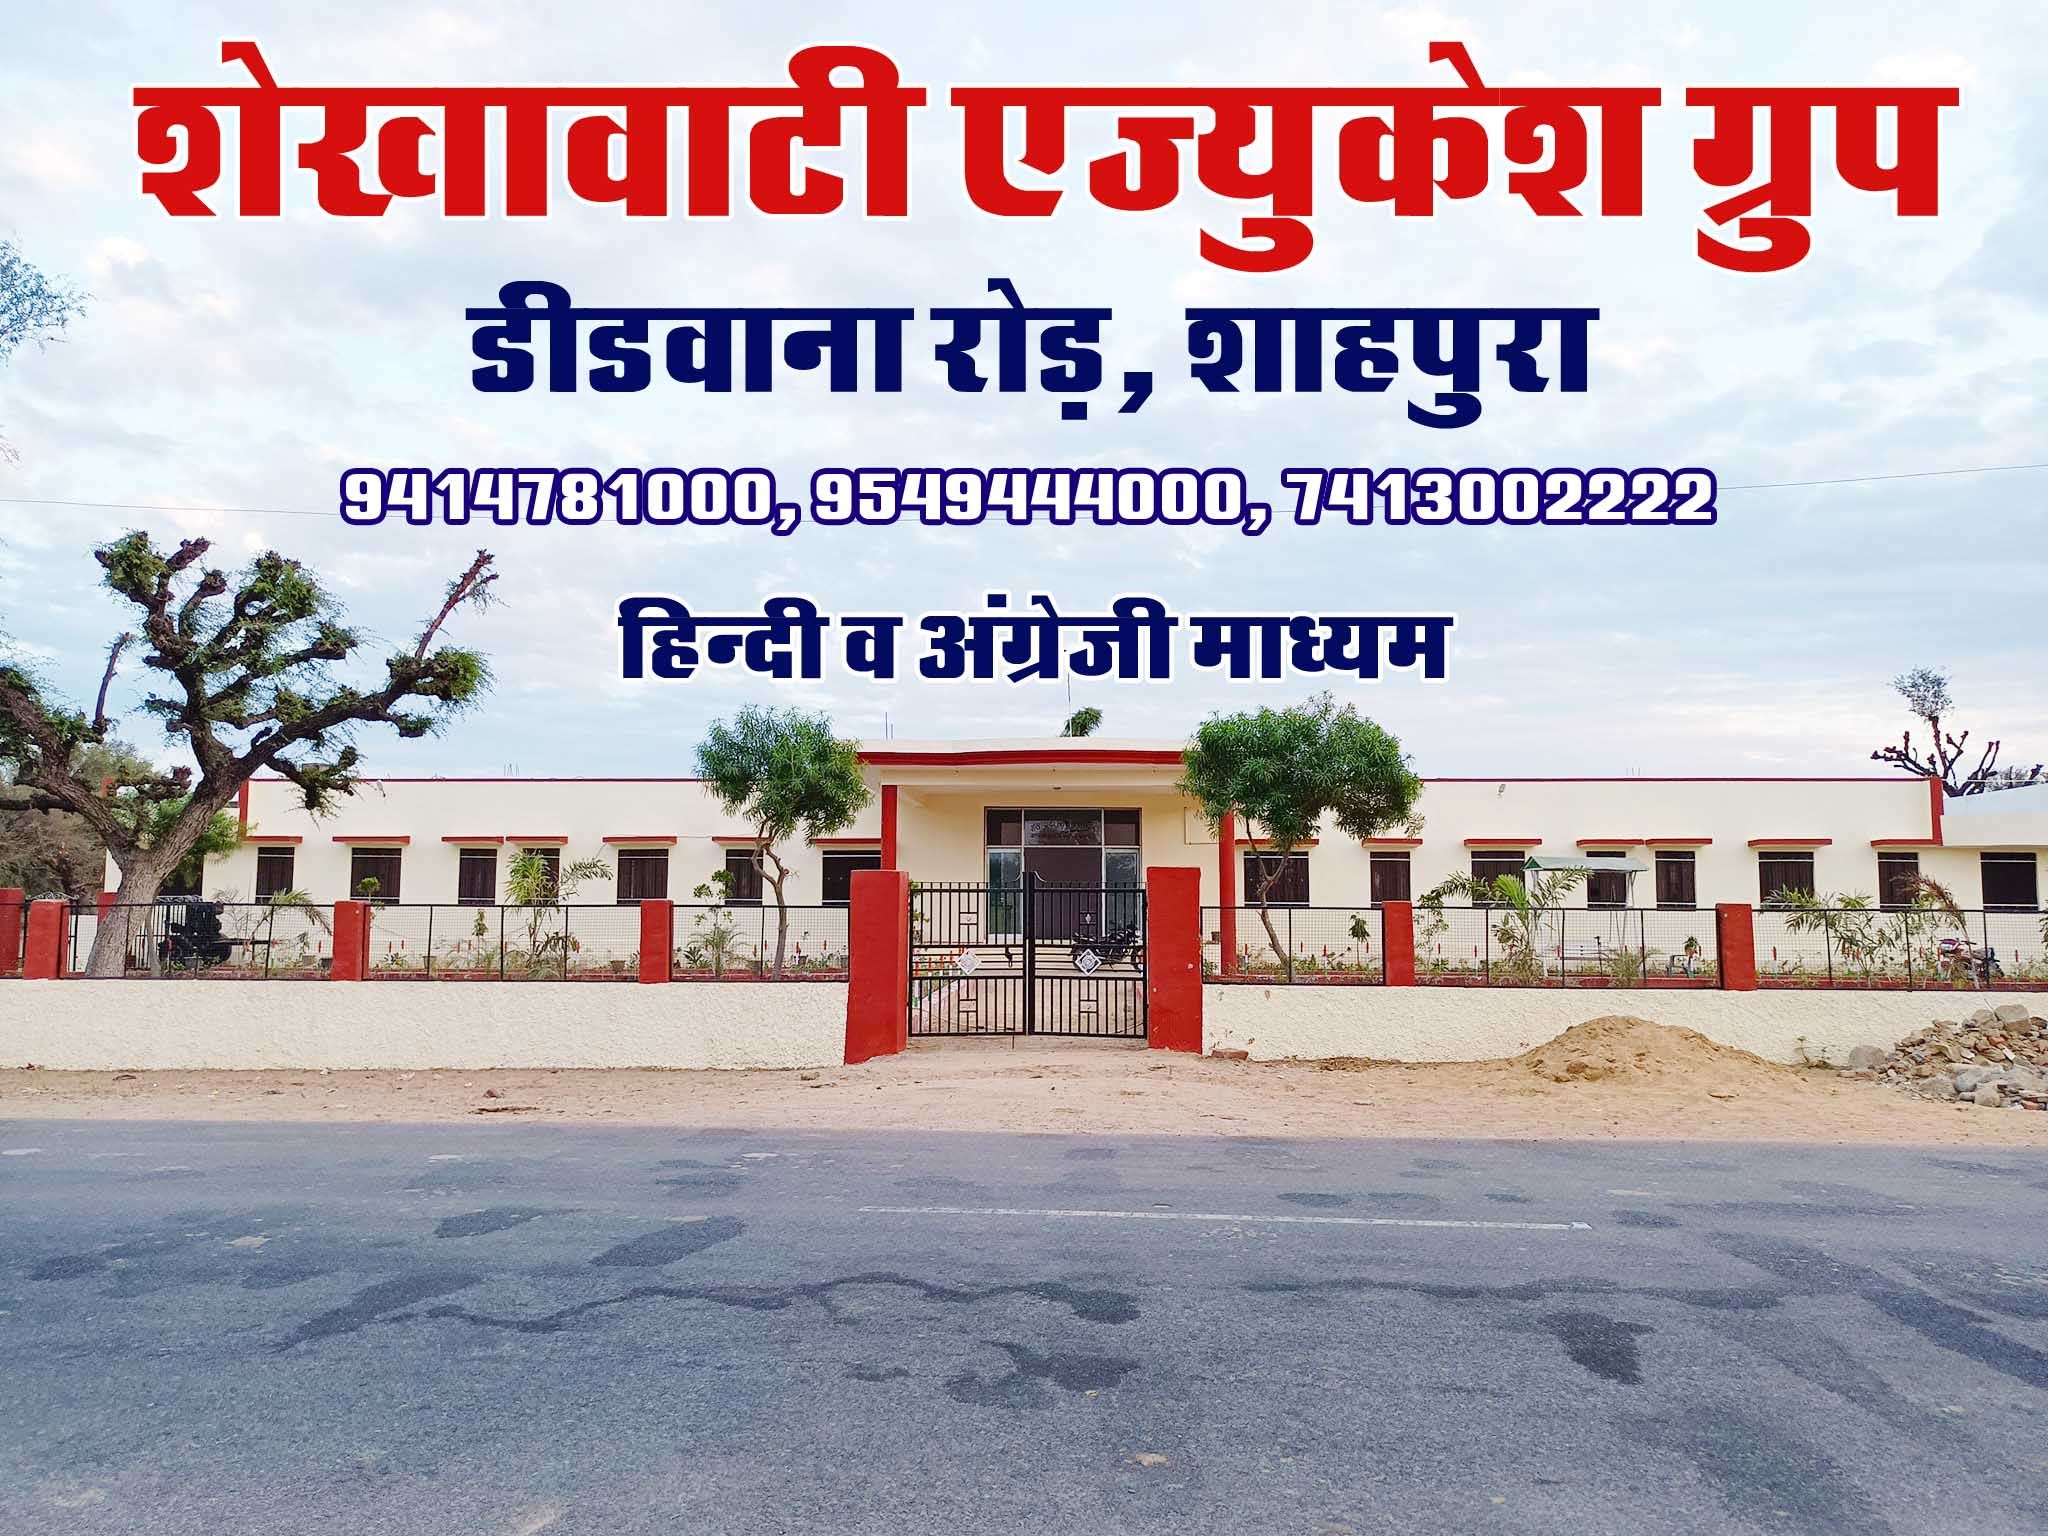 Shekhawati Sr. Sec. School, Shahpura (Dhod) Sikar